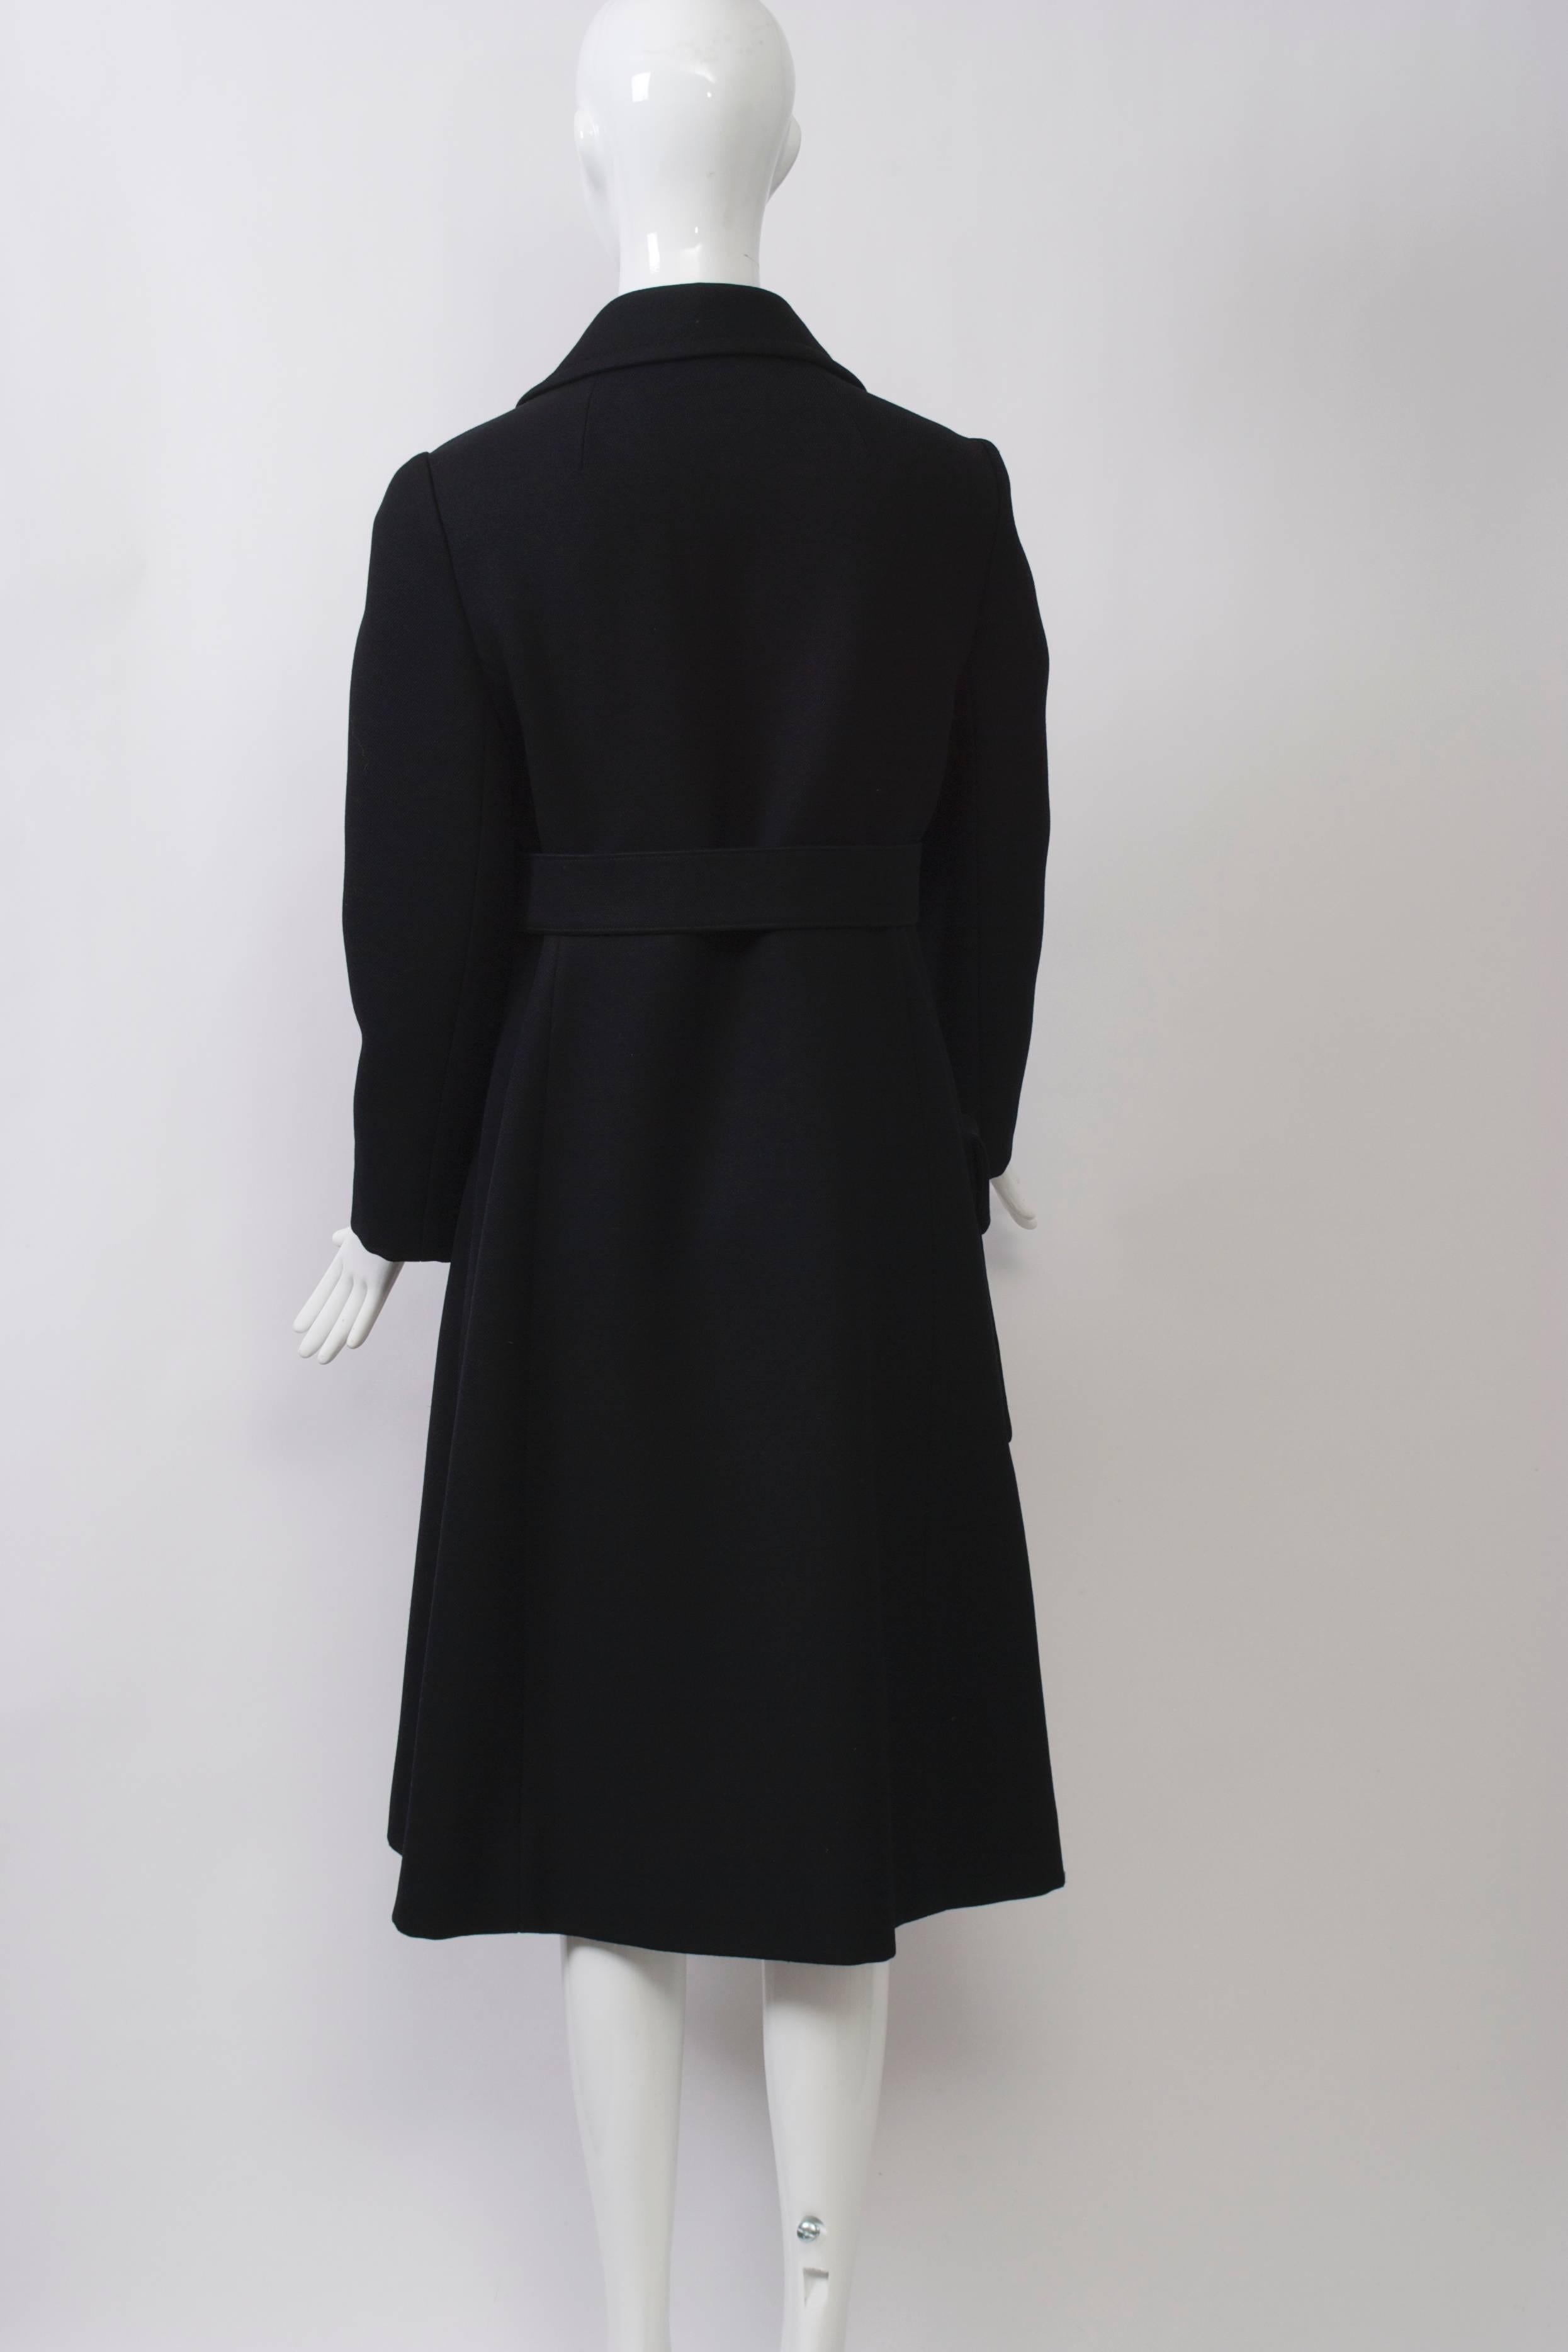 Women's or Men's Originala 1970s Belted Coat